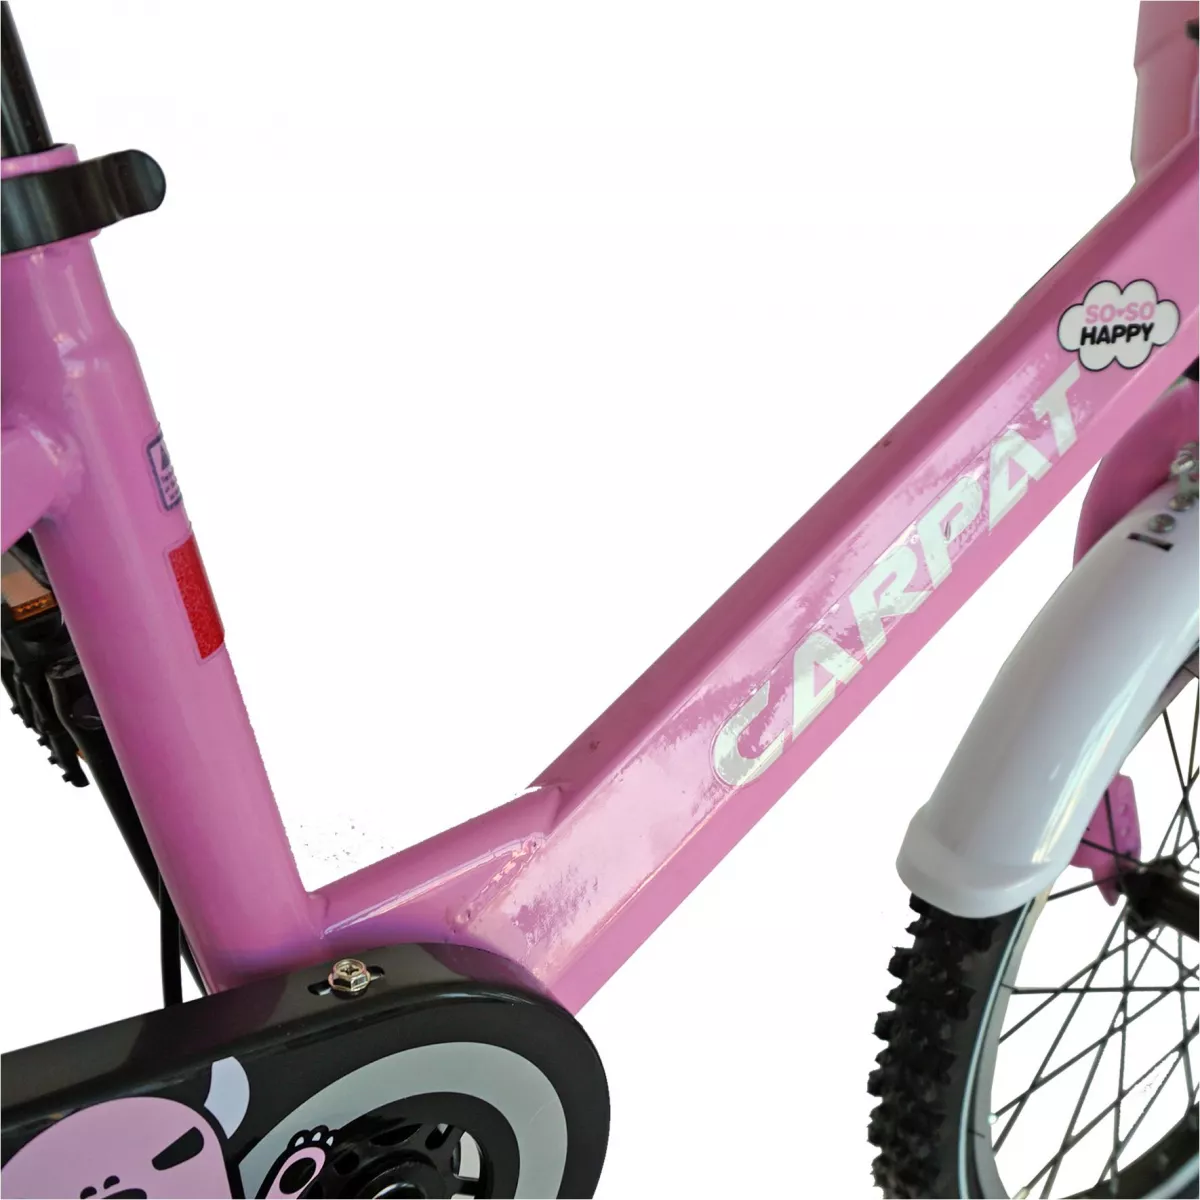 Bicicleta fete CARPAT C1402C, roata 14", V-Brake, roti ajutatoare, 3-5 ani, roz/alb - RESIGILATA